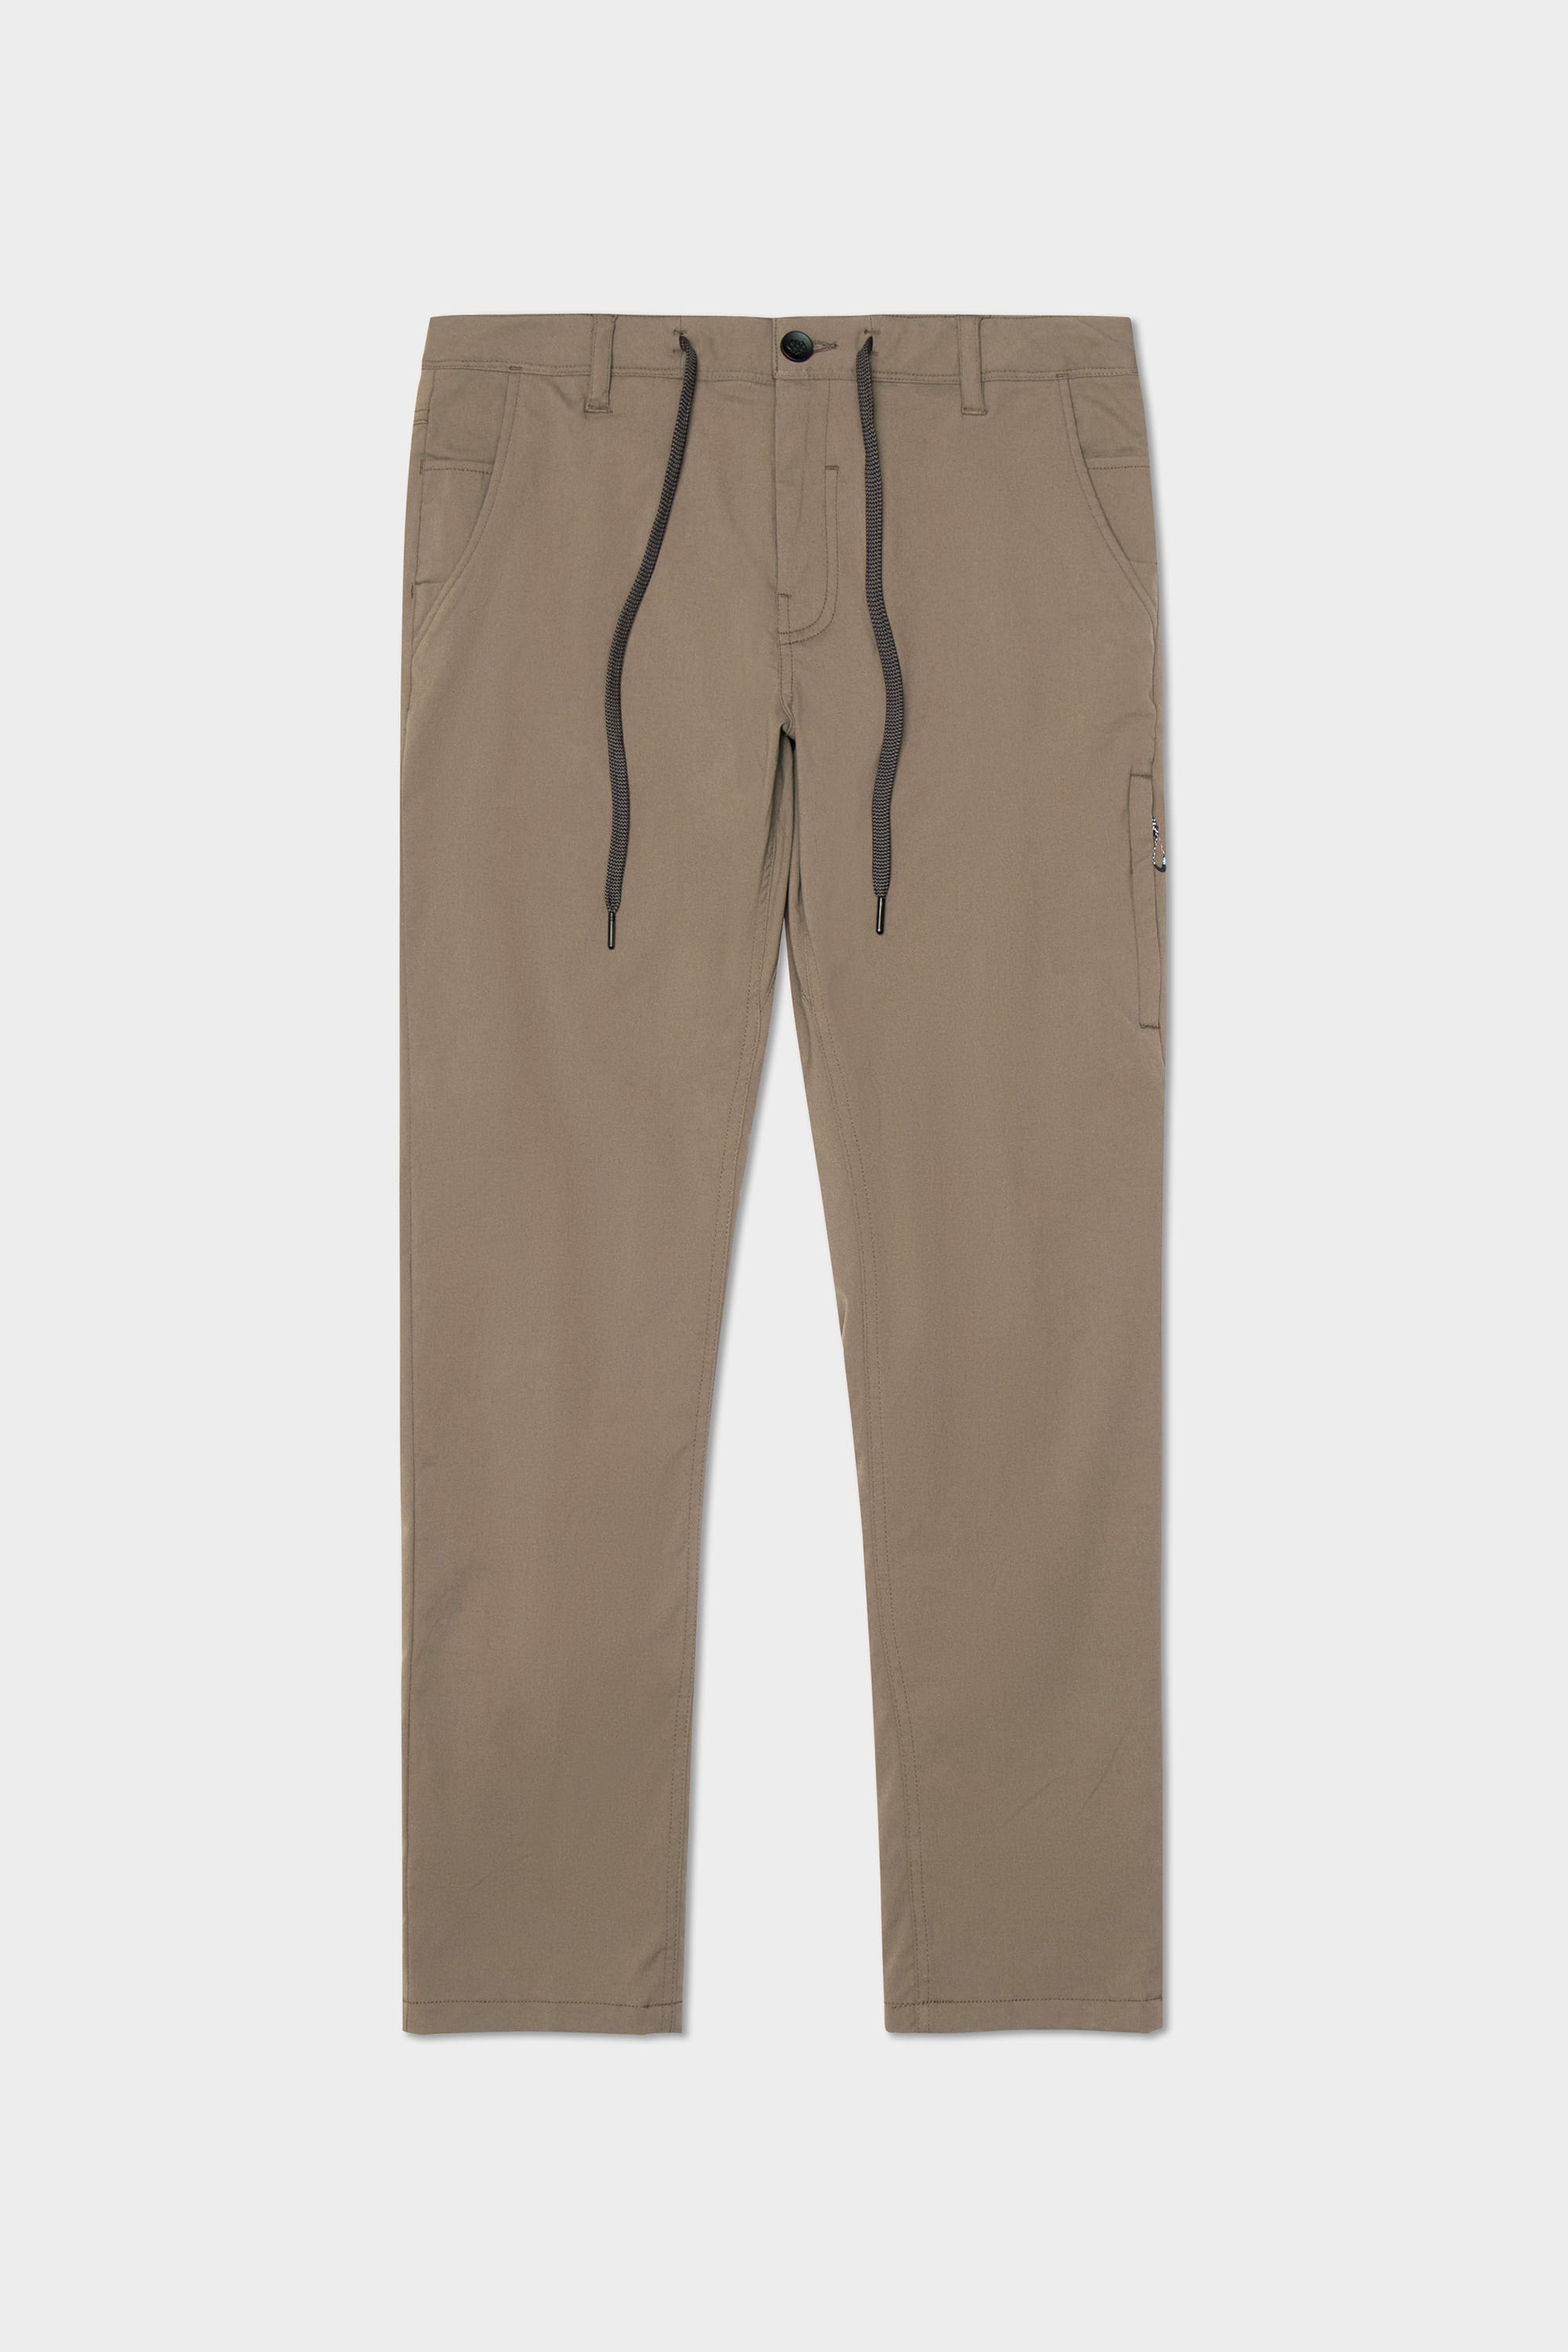 686 Technical Apparel | Men's Pants – 686.com